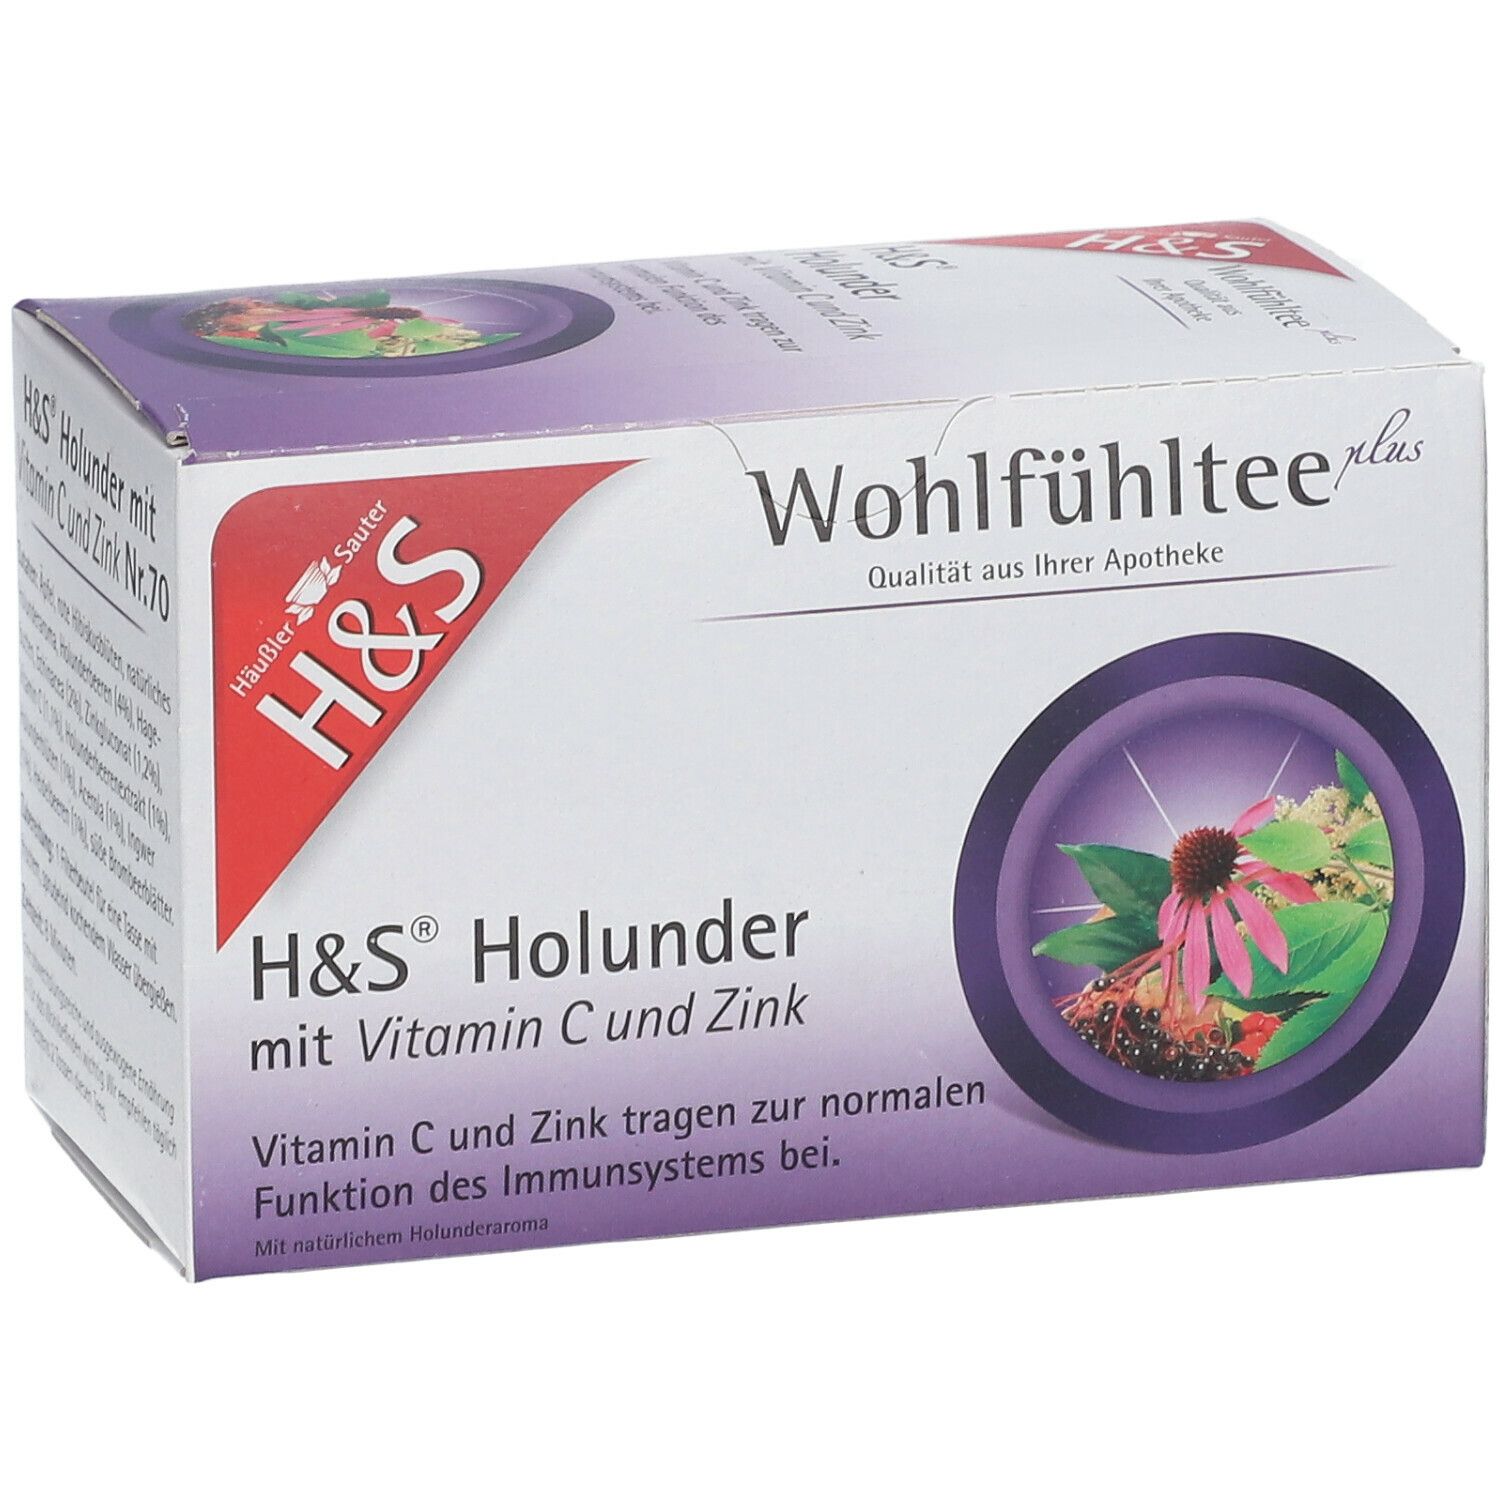 H&S Holunder mit Vitamin C und Zink Filterbeutel